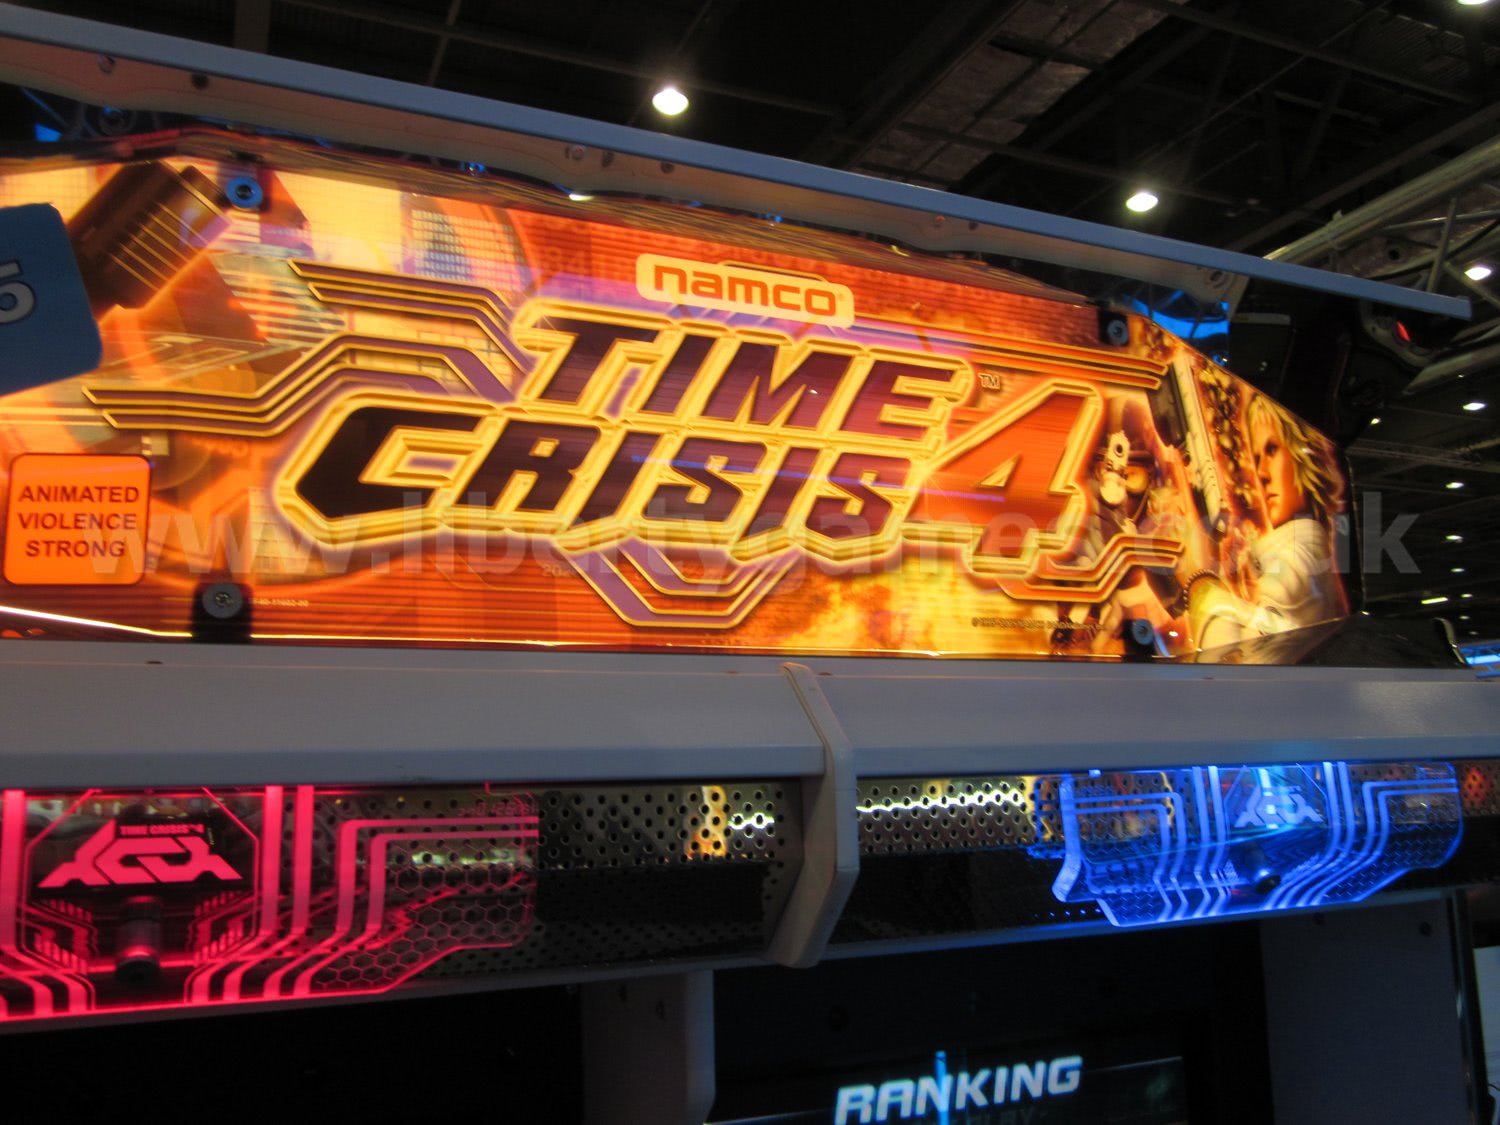 Time crisis 4 arcade game